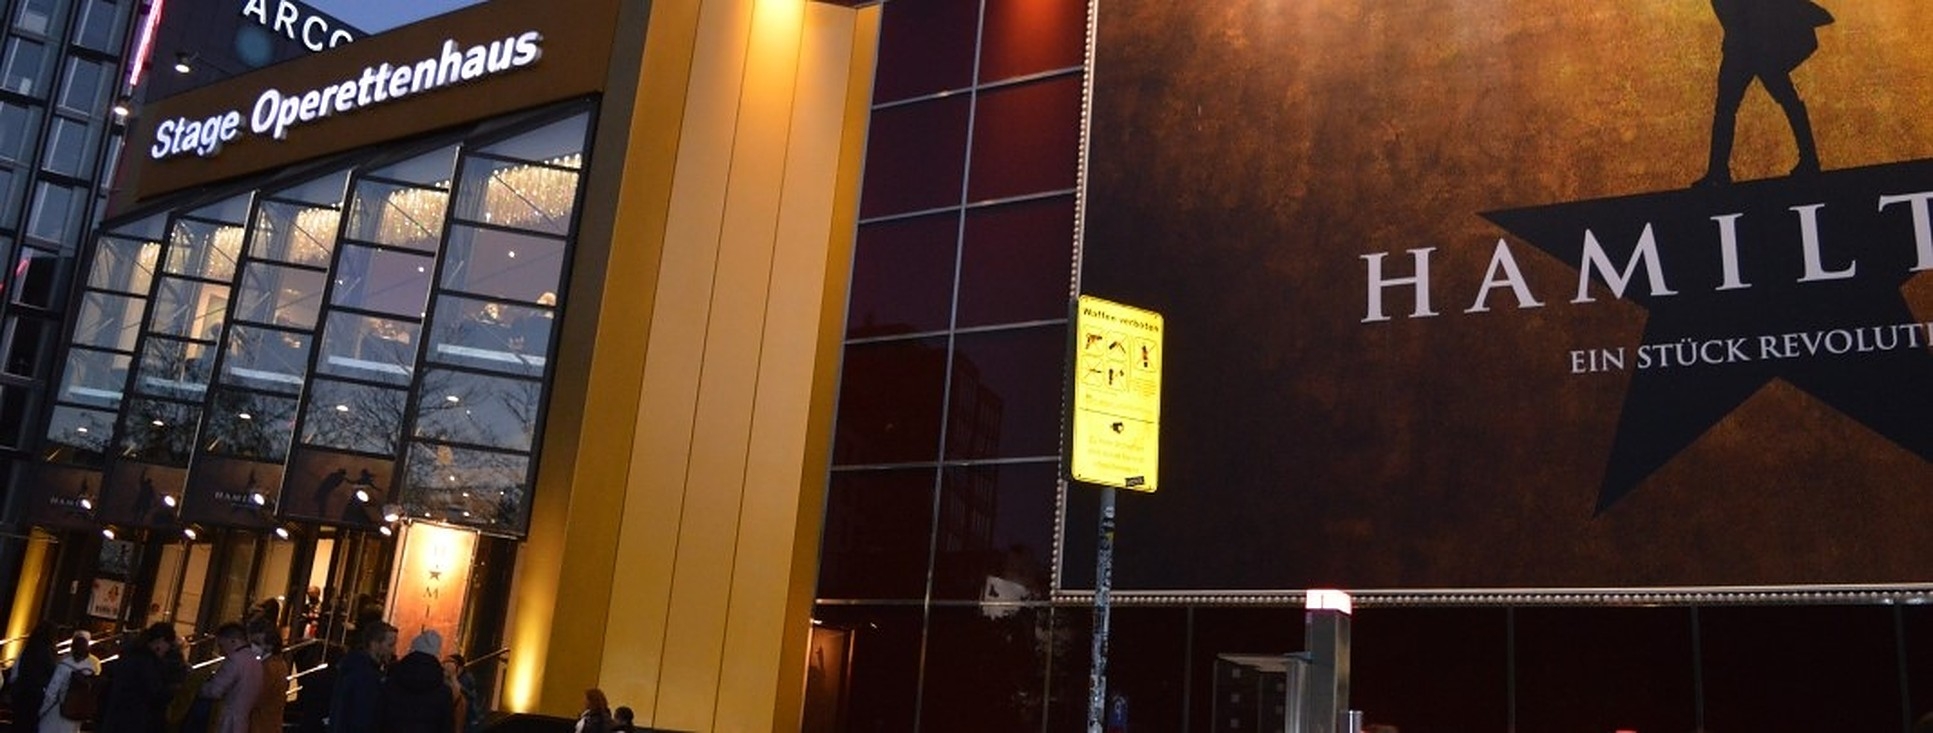 Foto: Das Stage Operetten Theater in Hamburg bei Nacht, gold-gelb beleuchtet mit einem Plakat und dem Schriftzug Hamilton und einem menschlichen Schattenriss